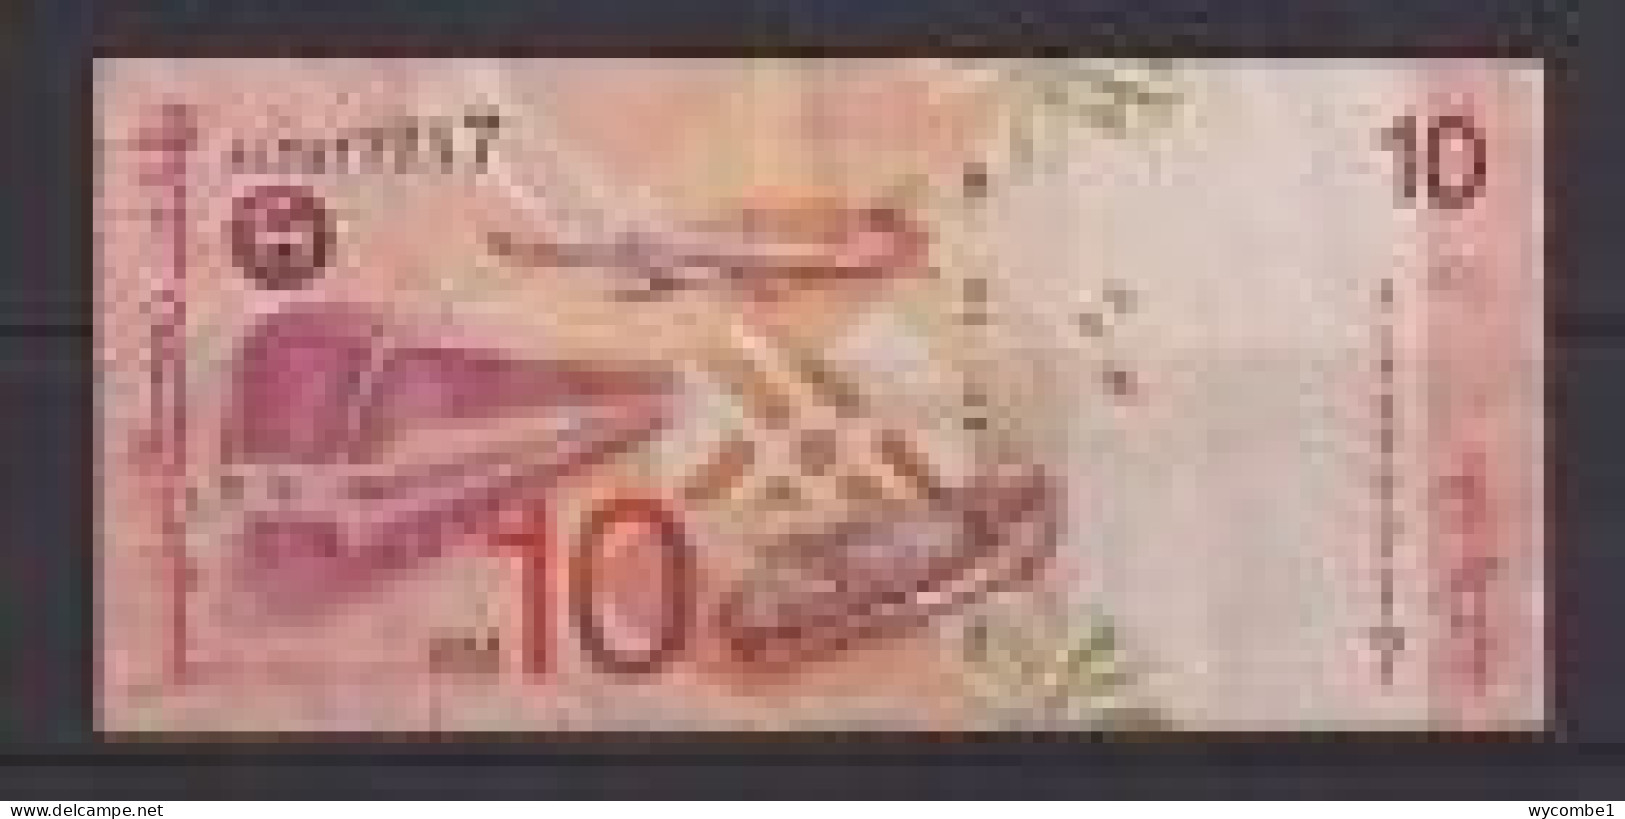 MALAYSIA - 1997 10 Ringgit Circulated Banknote - Malaysia